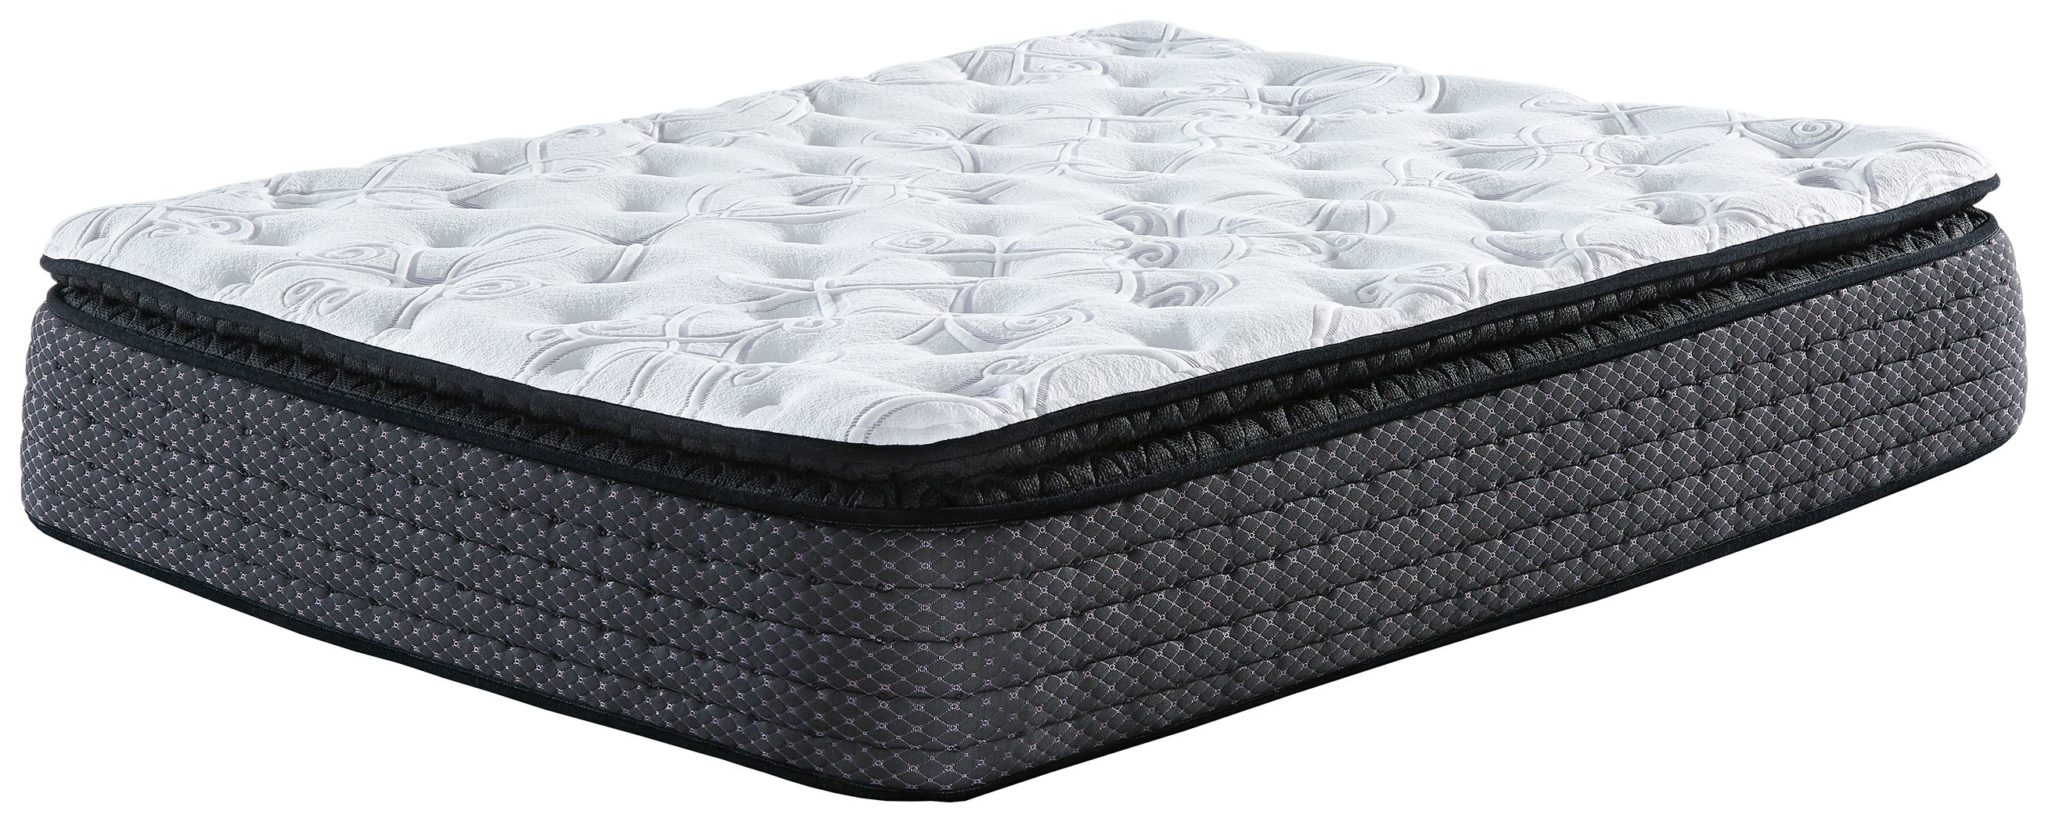 good deals on pillowtop queen mattress sets